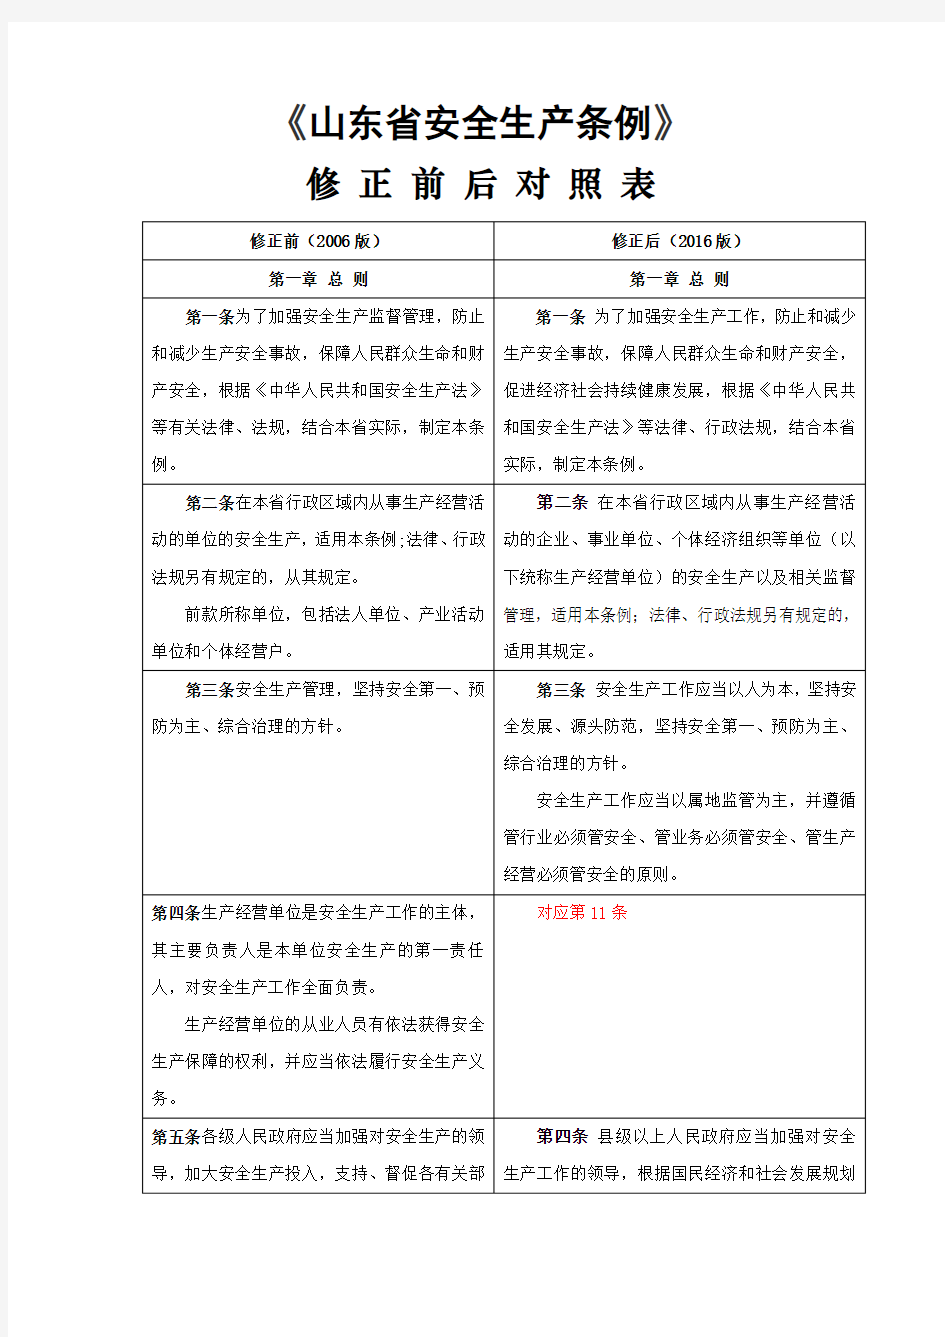 山东省安全生产条例修改前后对照表2016版